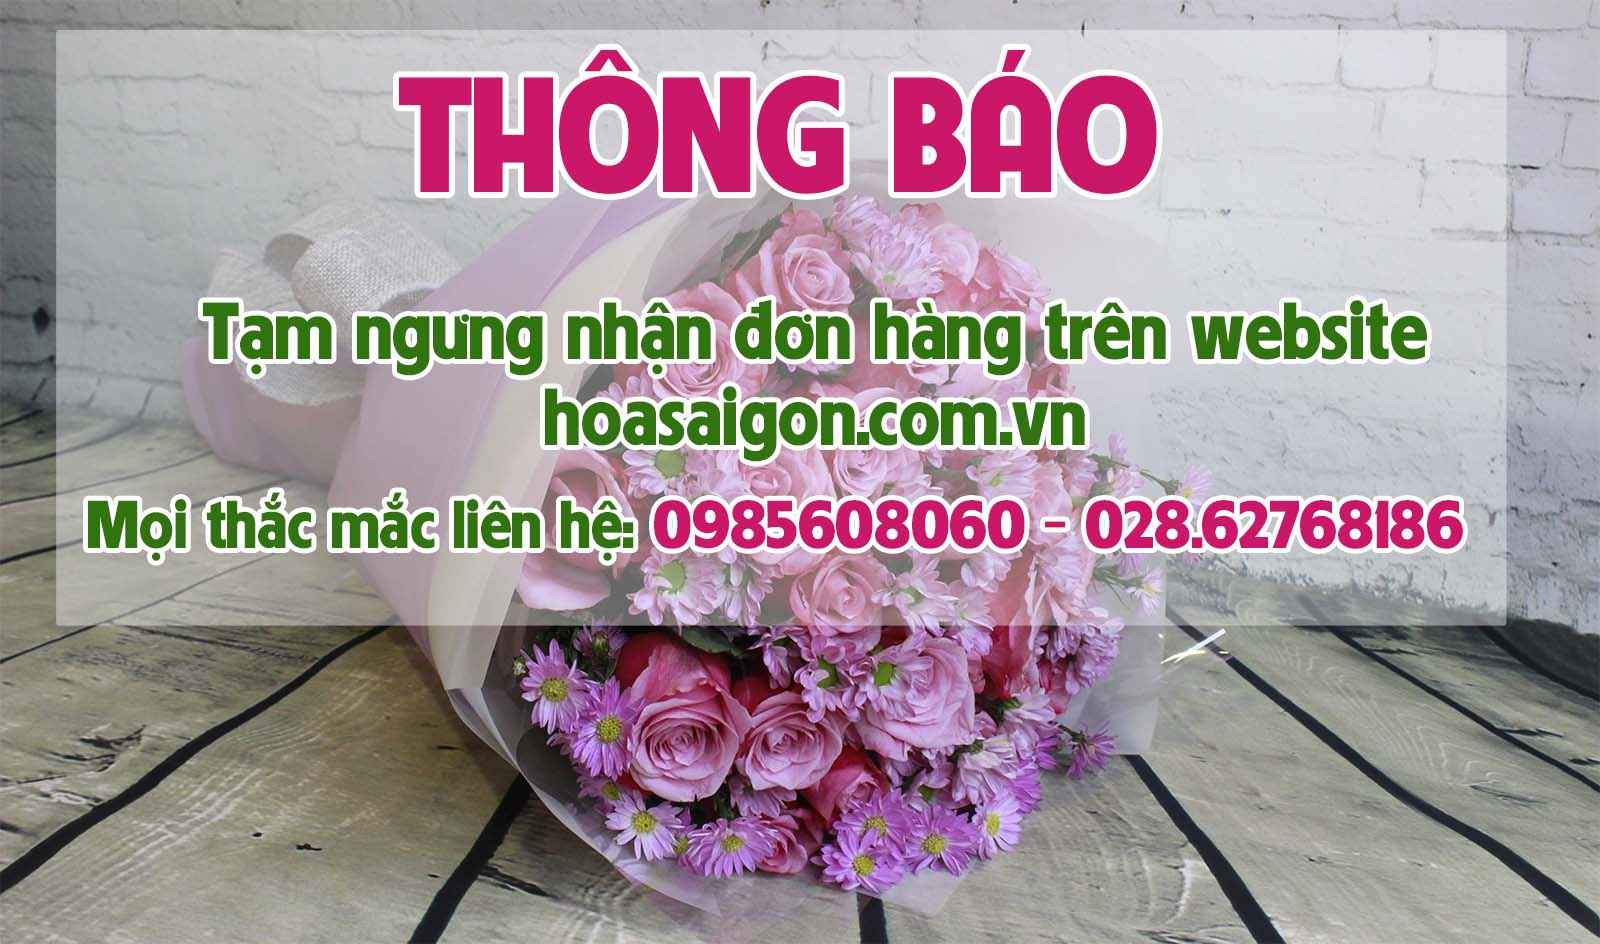 Hoa Sài Gòn thông báo ngưng nhận đơn hàng online